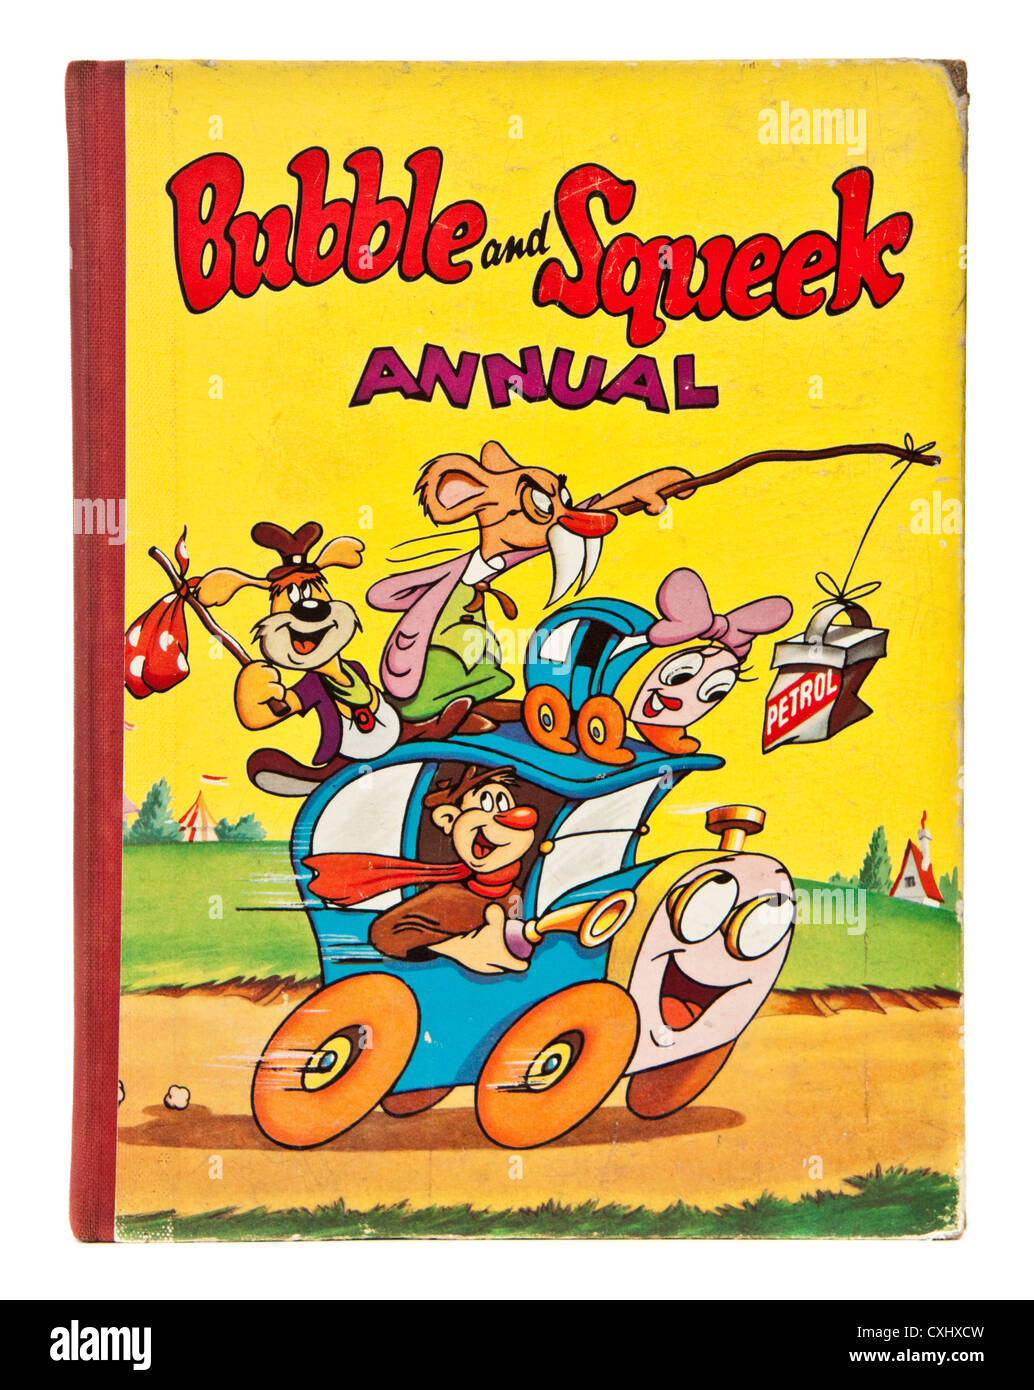 Seltene 1950 "Bubble und Squeek" Kinder-jährliche von Arthur Groom mit Illustrationen von George Moreno. Stockfoto